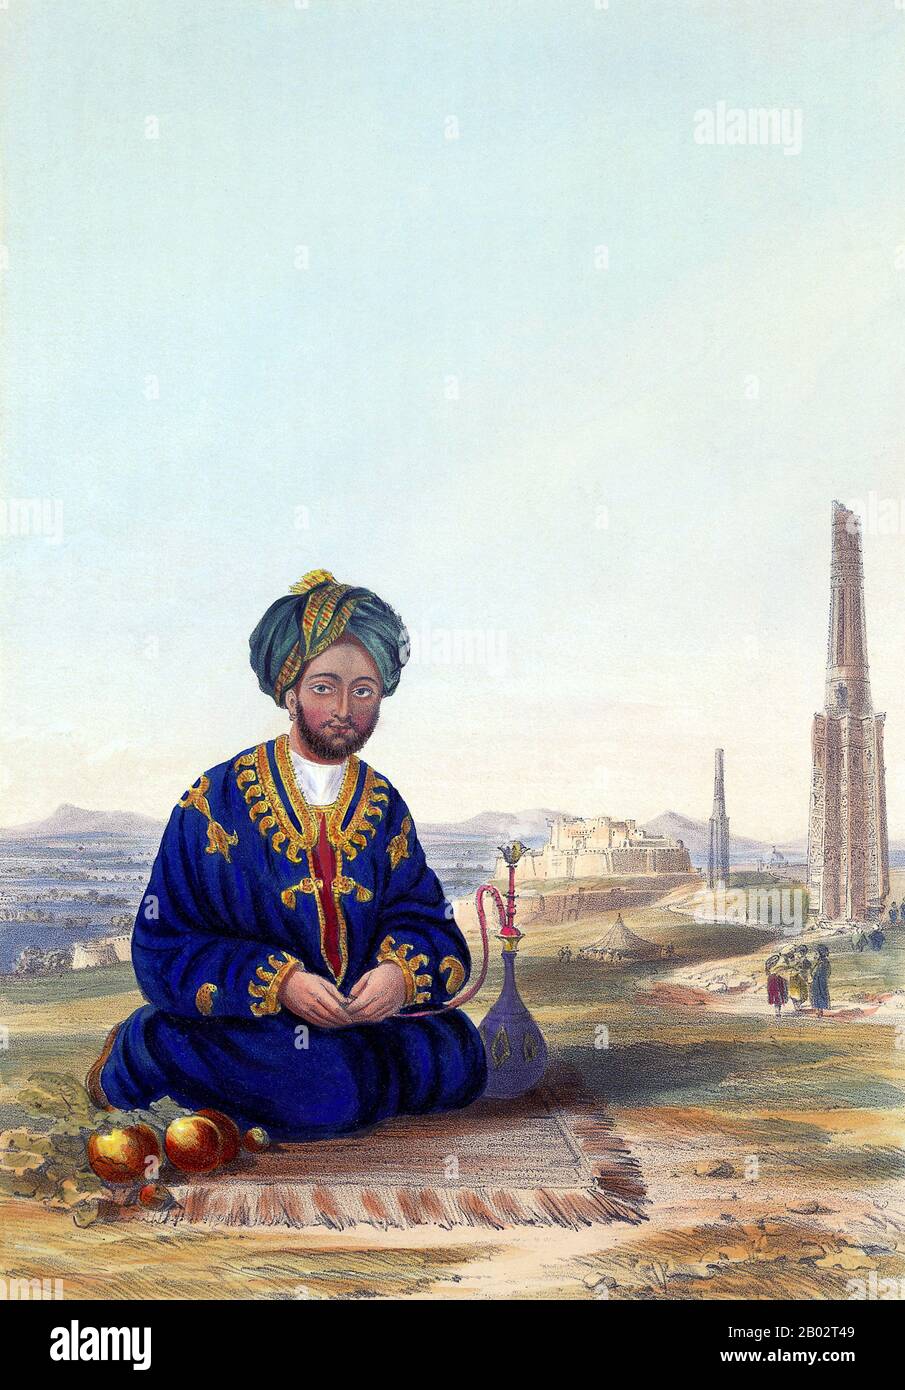 Quando gli inglesi catturarono Ghazni nel luglio 1839, una delle conseguenze più importanti fu la cattura del suo governatore, Ghulam Haider Khan, il quarto figlio di Dost Mohammed. Temendo per la sua vita, Ghulam cercò di fuggire dalla città, ma fu intercettato e infine ricevuto e perdonato dall'impera, Shah Shuja. Quando Dost Mohammed riconquistò la sua posizione in Afghanistan, Ghulam divenne primo ministro di Kabul, succeduto al fratello Akbar. Così facendo, Ghulam divenne il successore più probabile di Dost Mohammed e quindi sconvolto i suoi due fratelli più anziani che ritenevano di essere stati messi da parte. Secondo Foto Stock